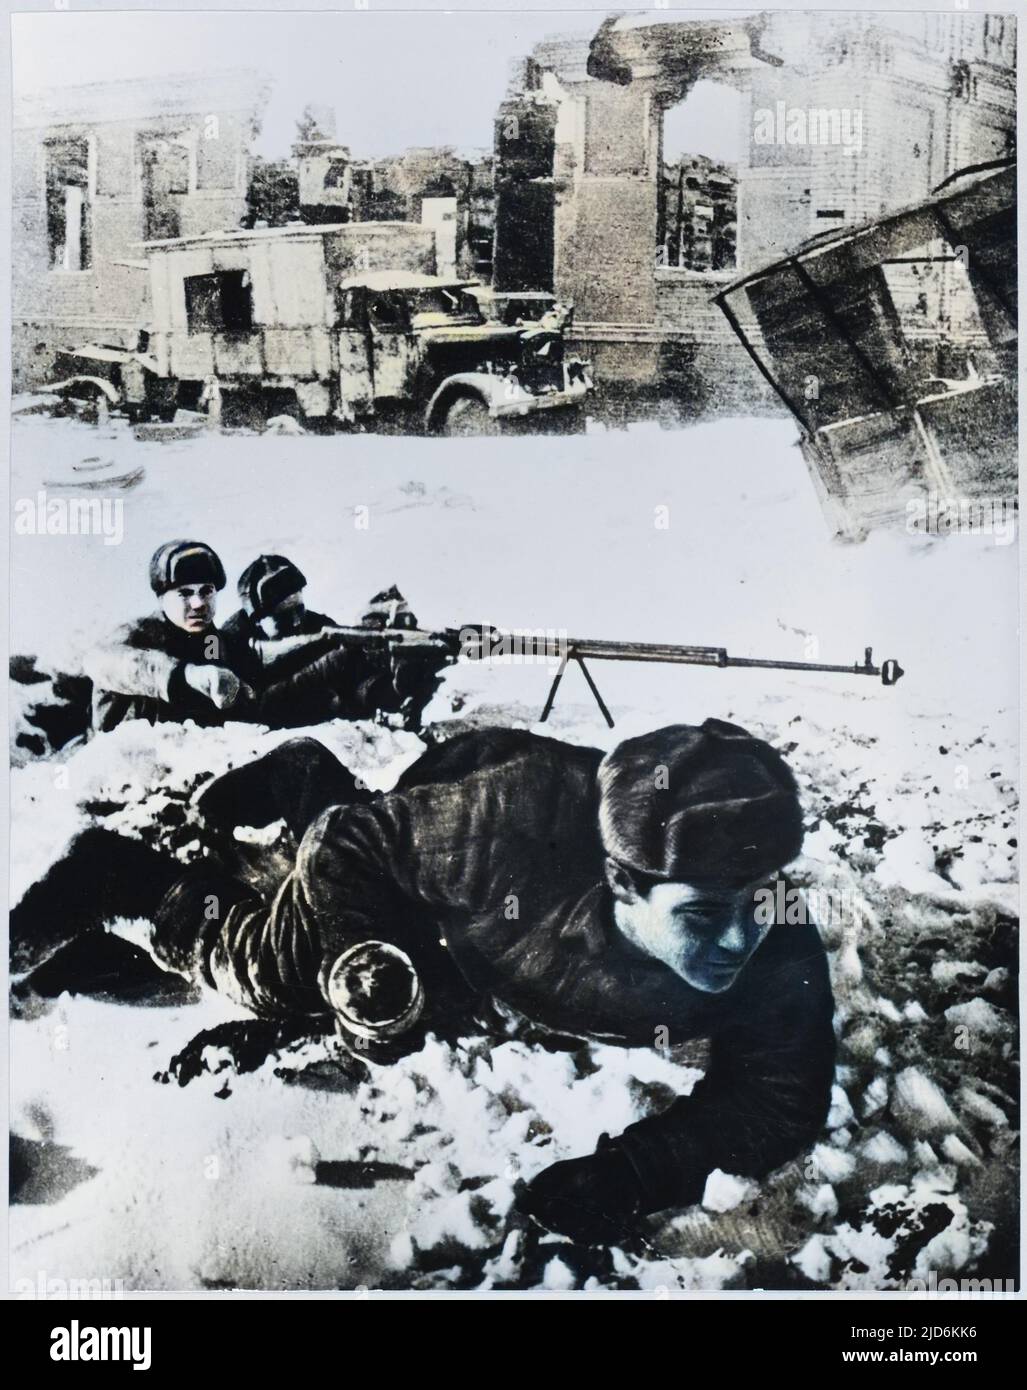 Les soldies de l'Armée rouge sont en attente parmi les ruines version colorisée de: 10143506 Date: 1942 - 1943 Banque D'Images